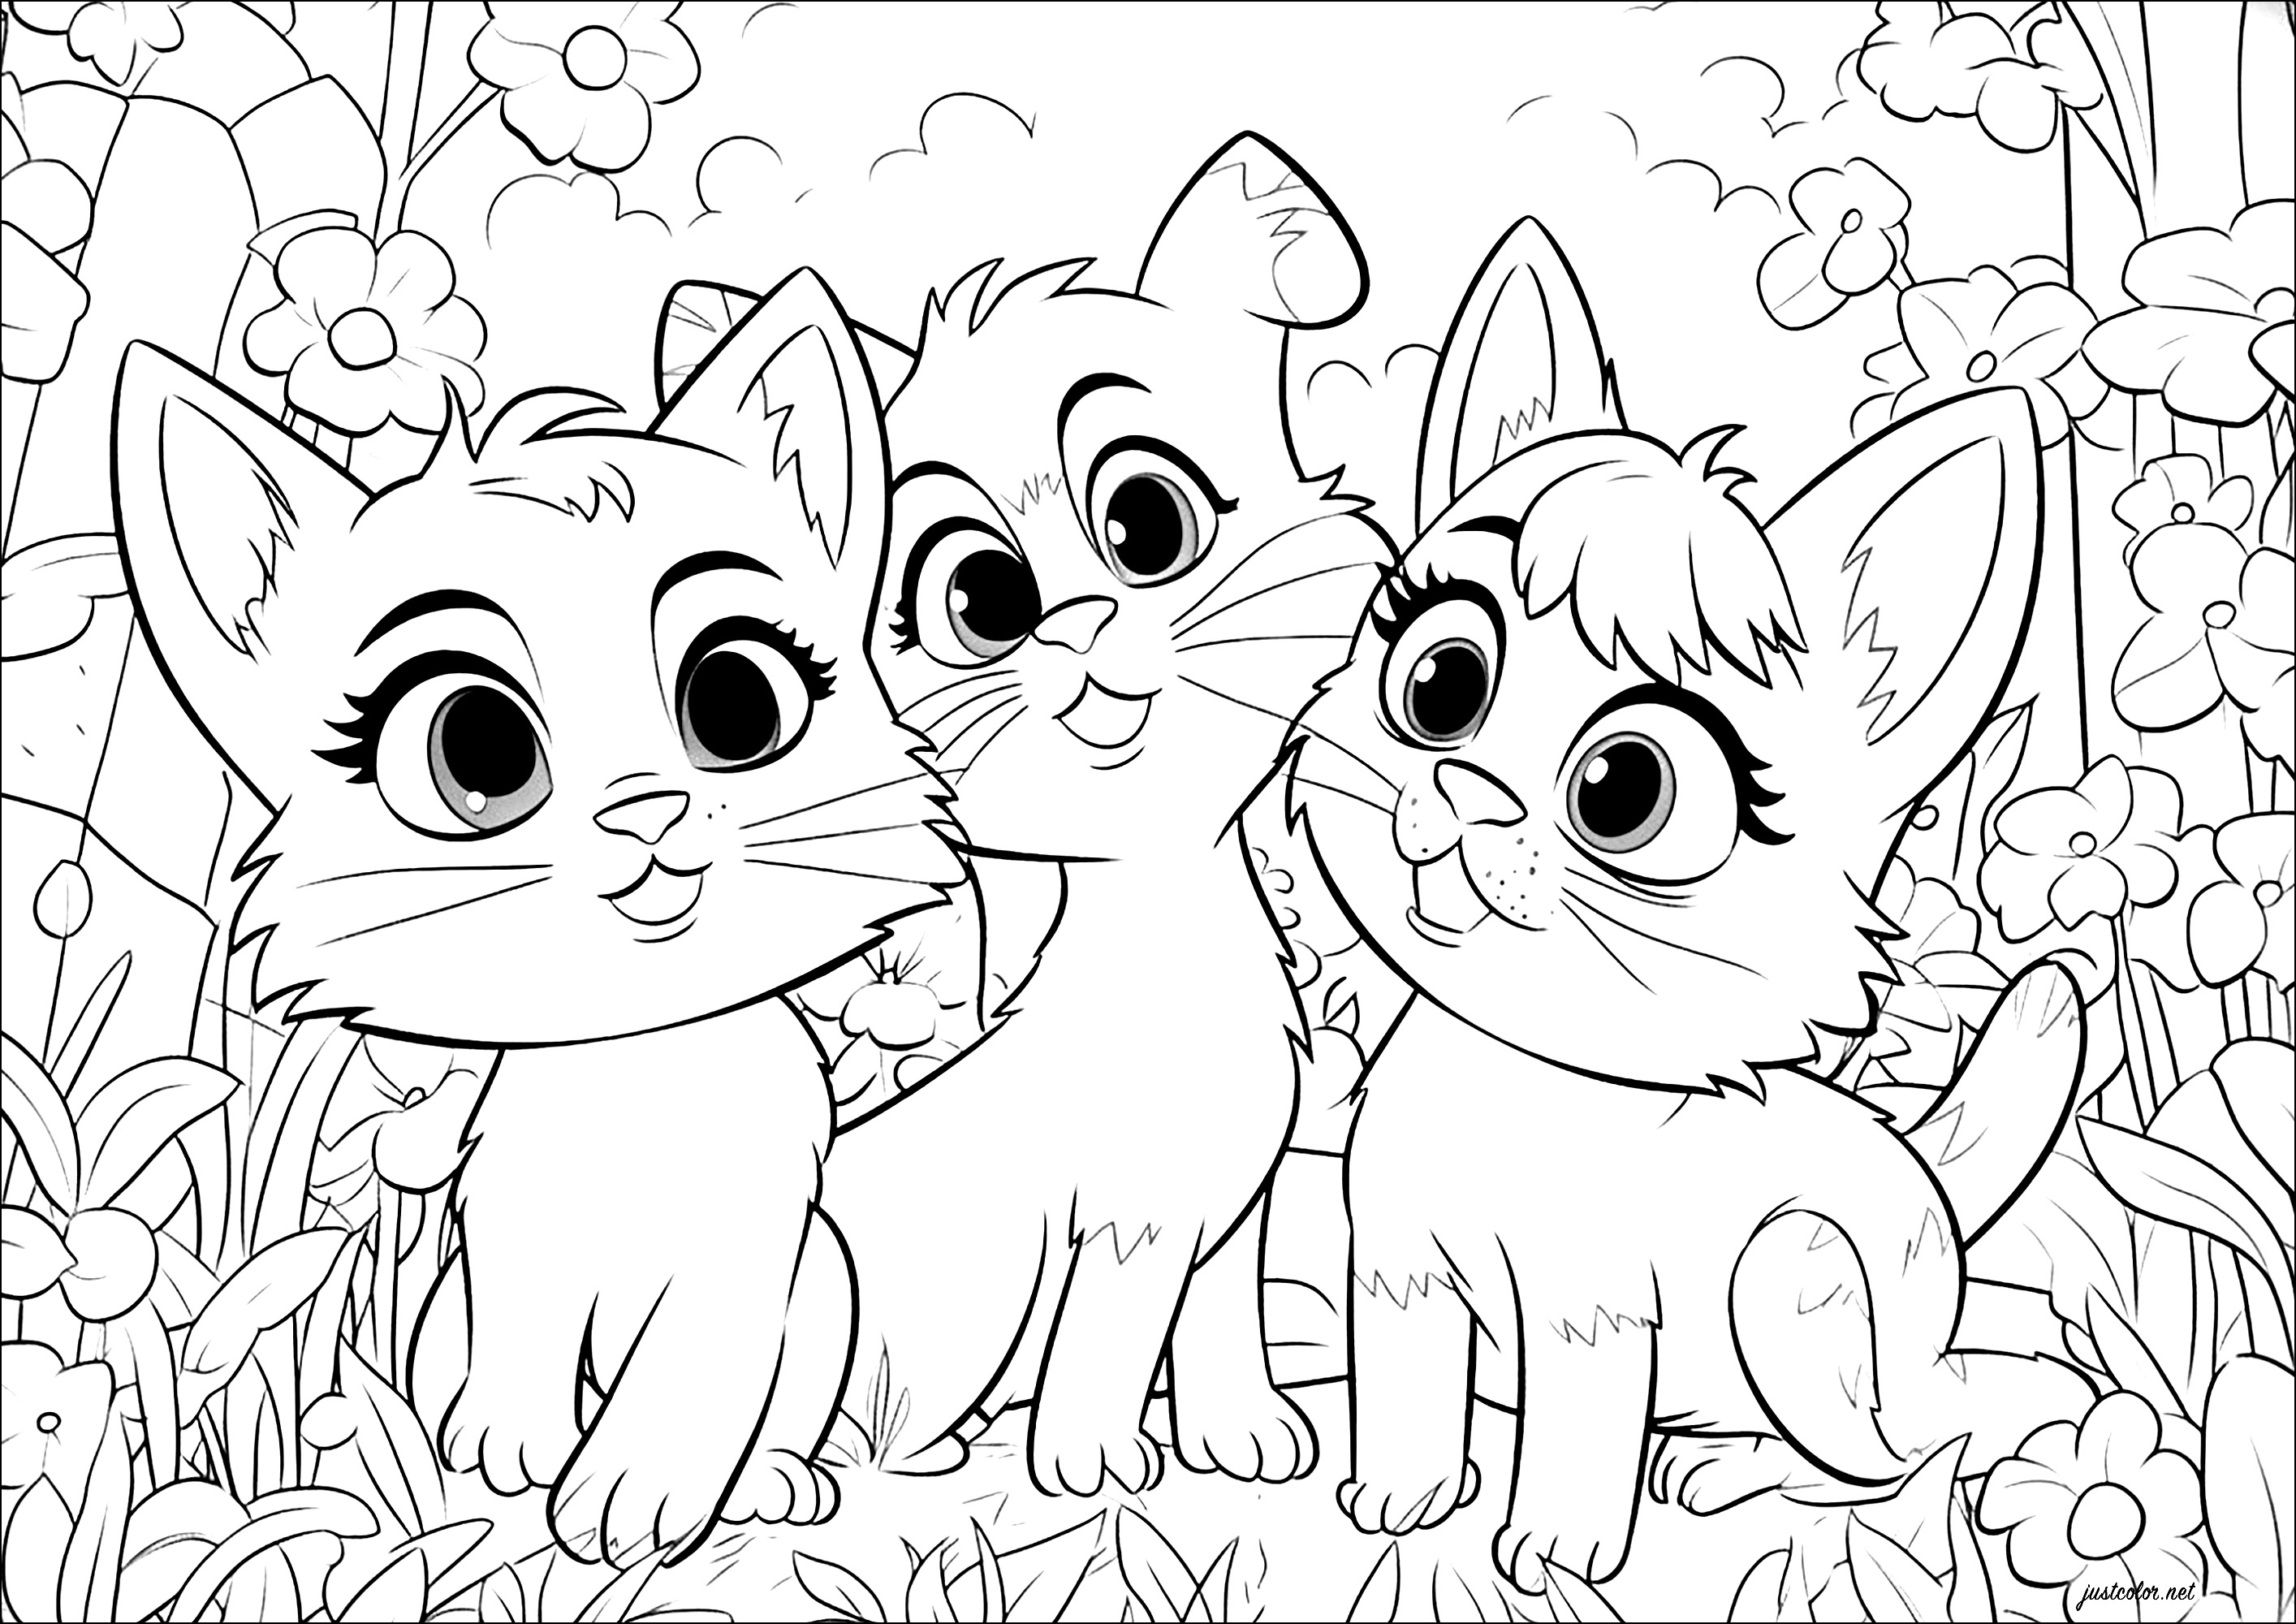 Drei Katzen im Disney-Pixar-Stil. Diese drei Katzen sind in einem Stil gezeichnet, der an Disney-Pixar-Zeichentrickfilme erinnert.